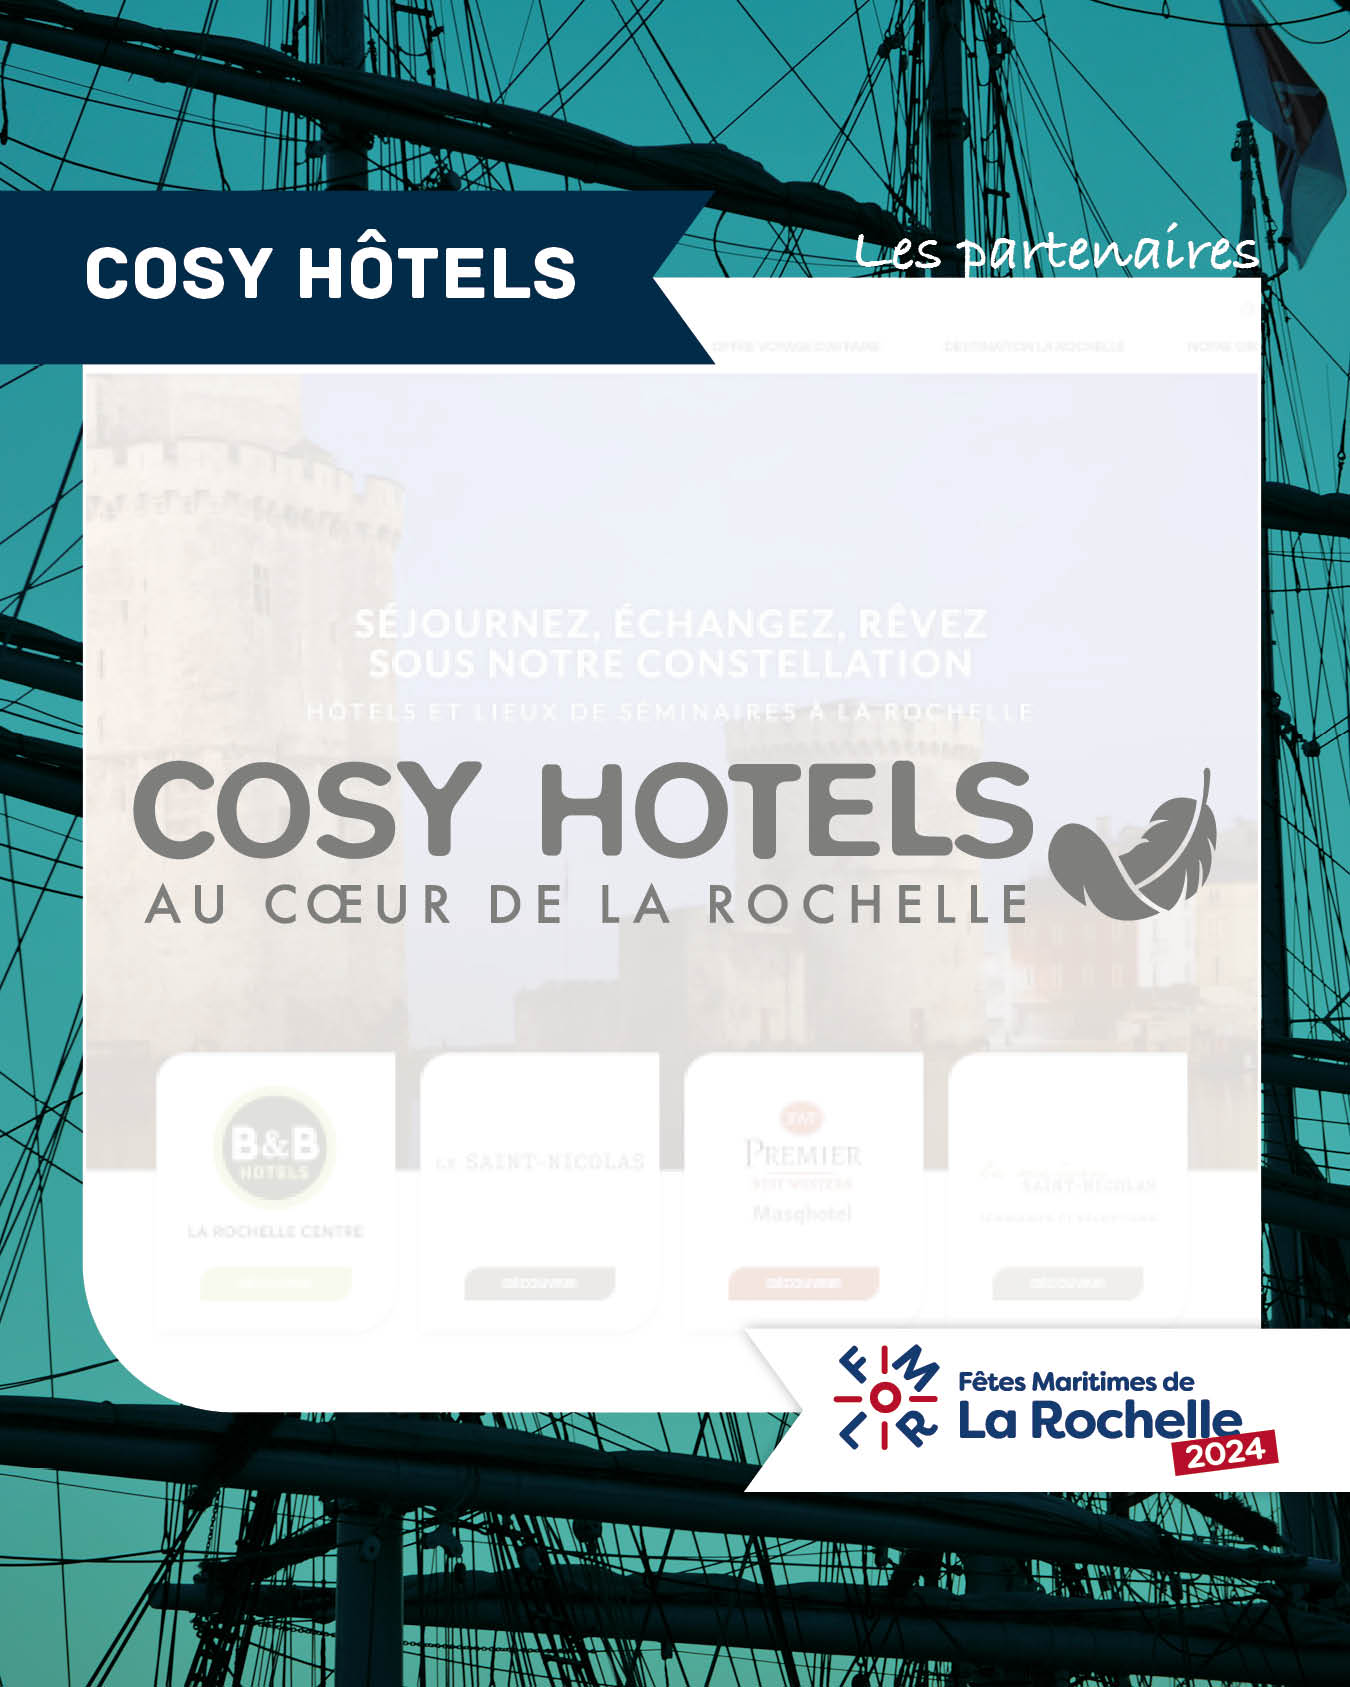 Cosy hôtels, partenaire des Fêtes Maritimes de La Rochelle 2024